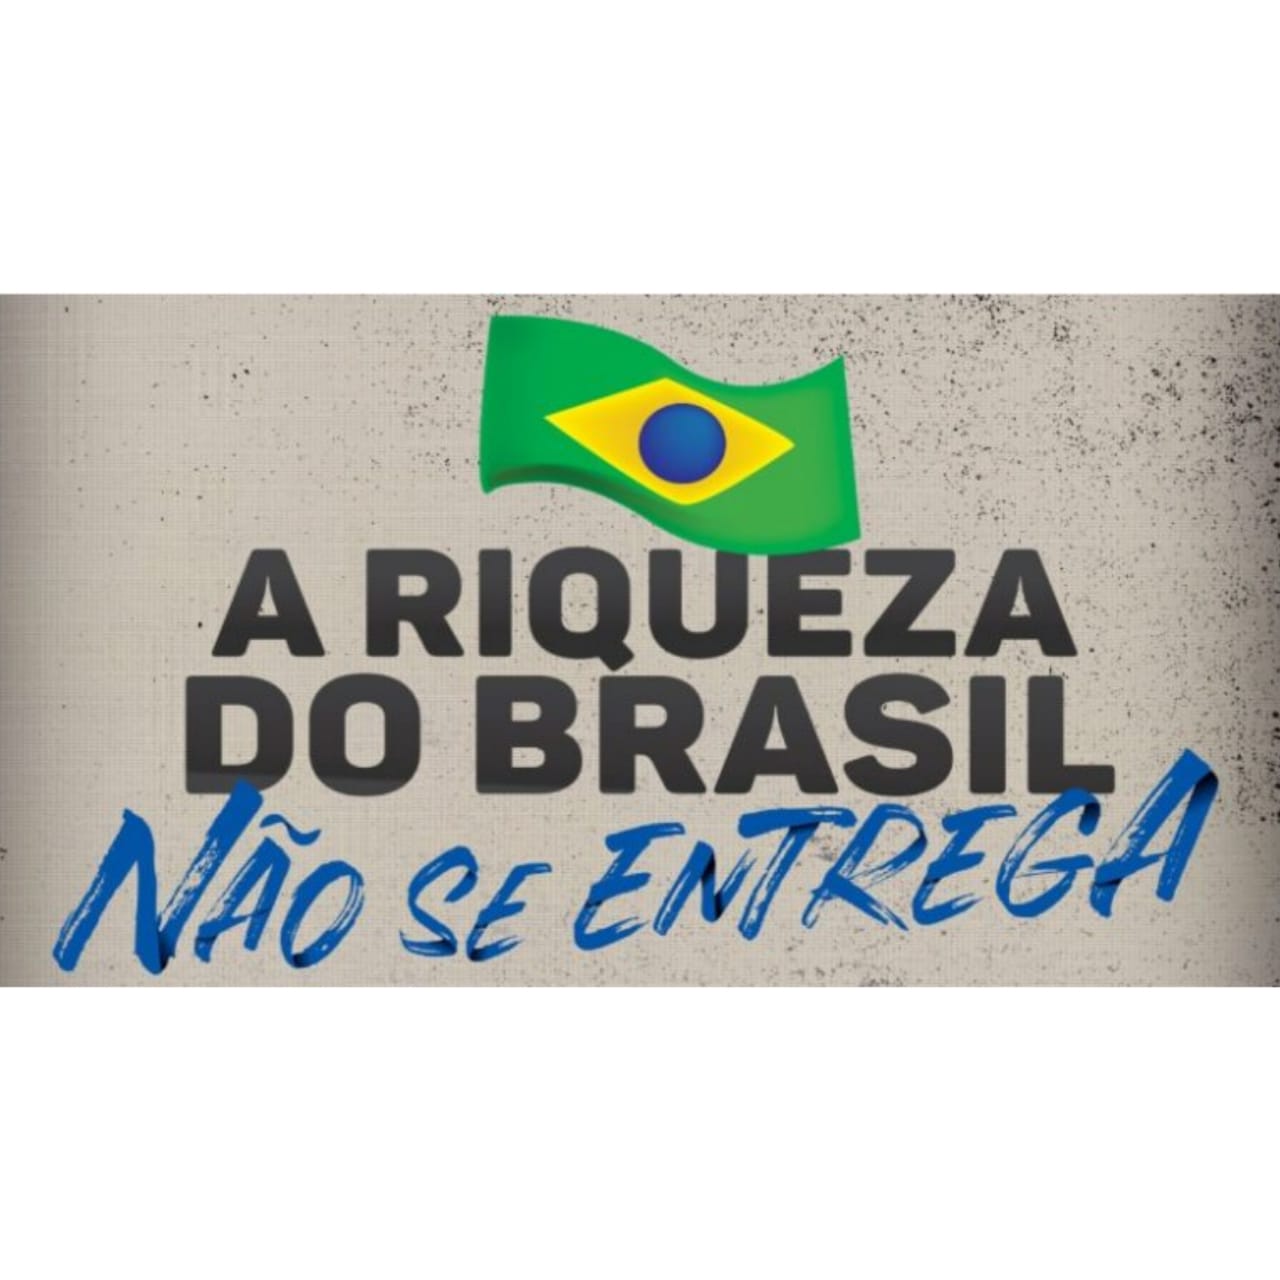 A riqueza do Brasil não se entrega